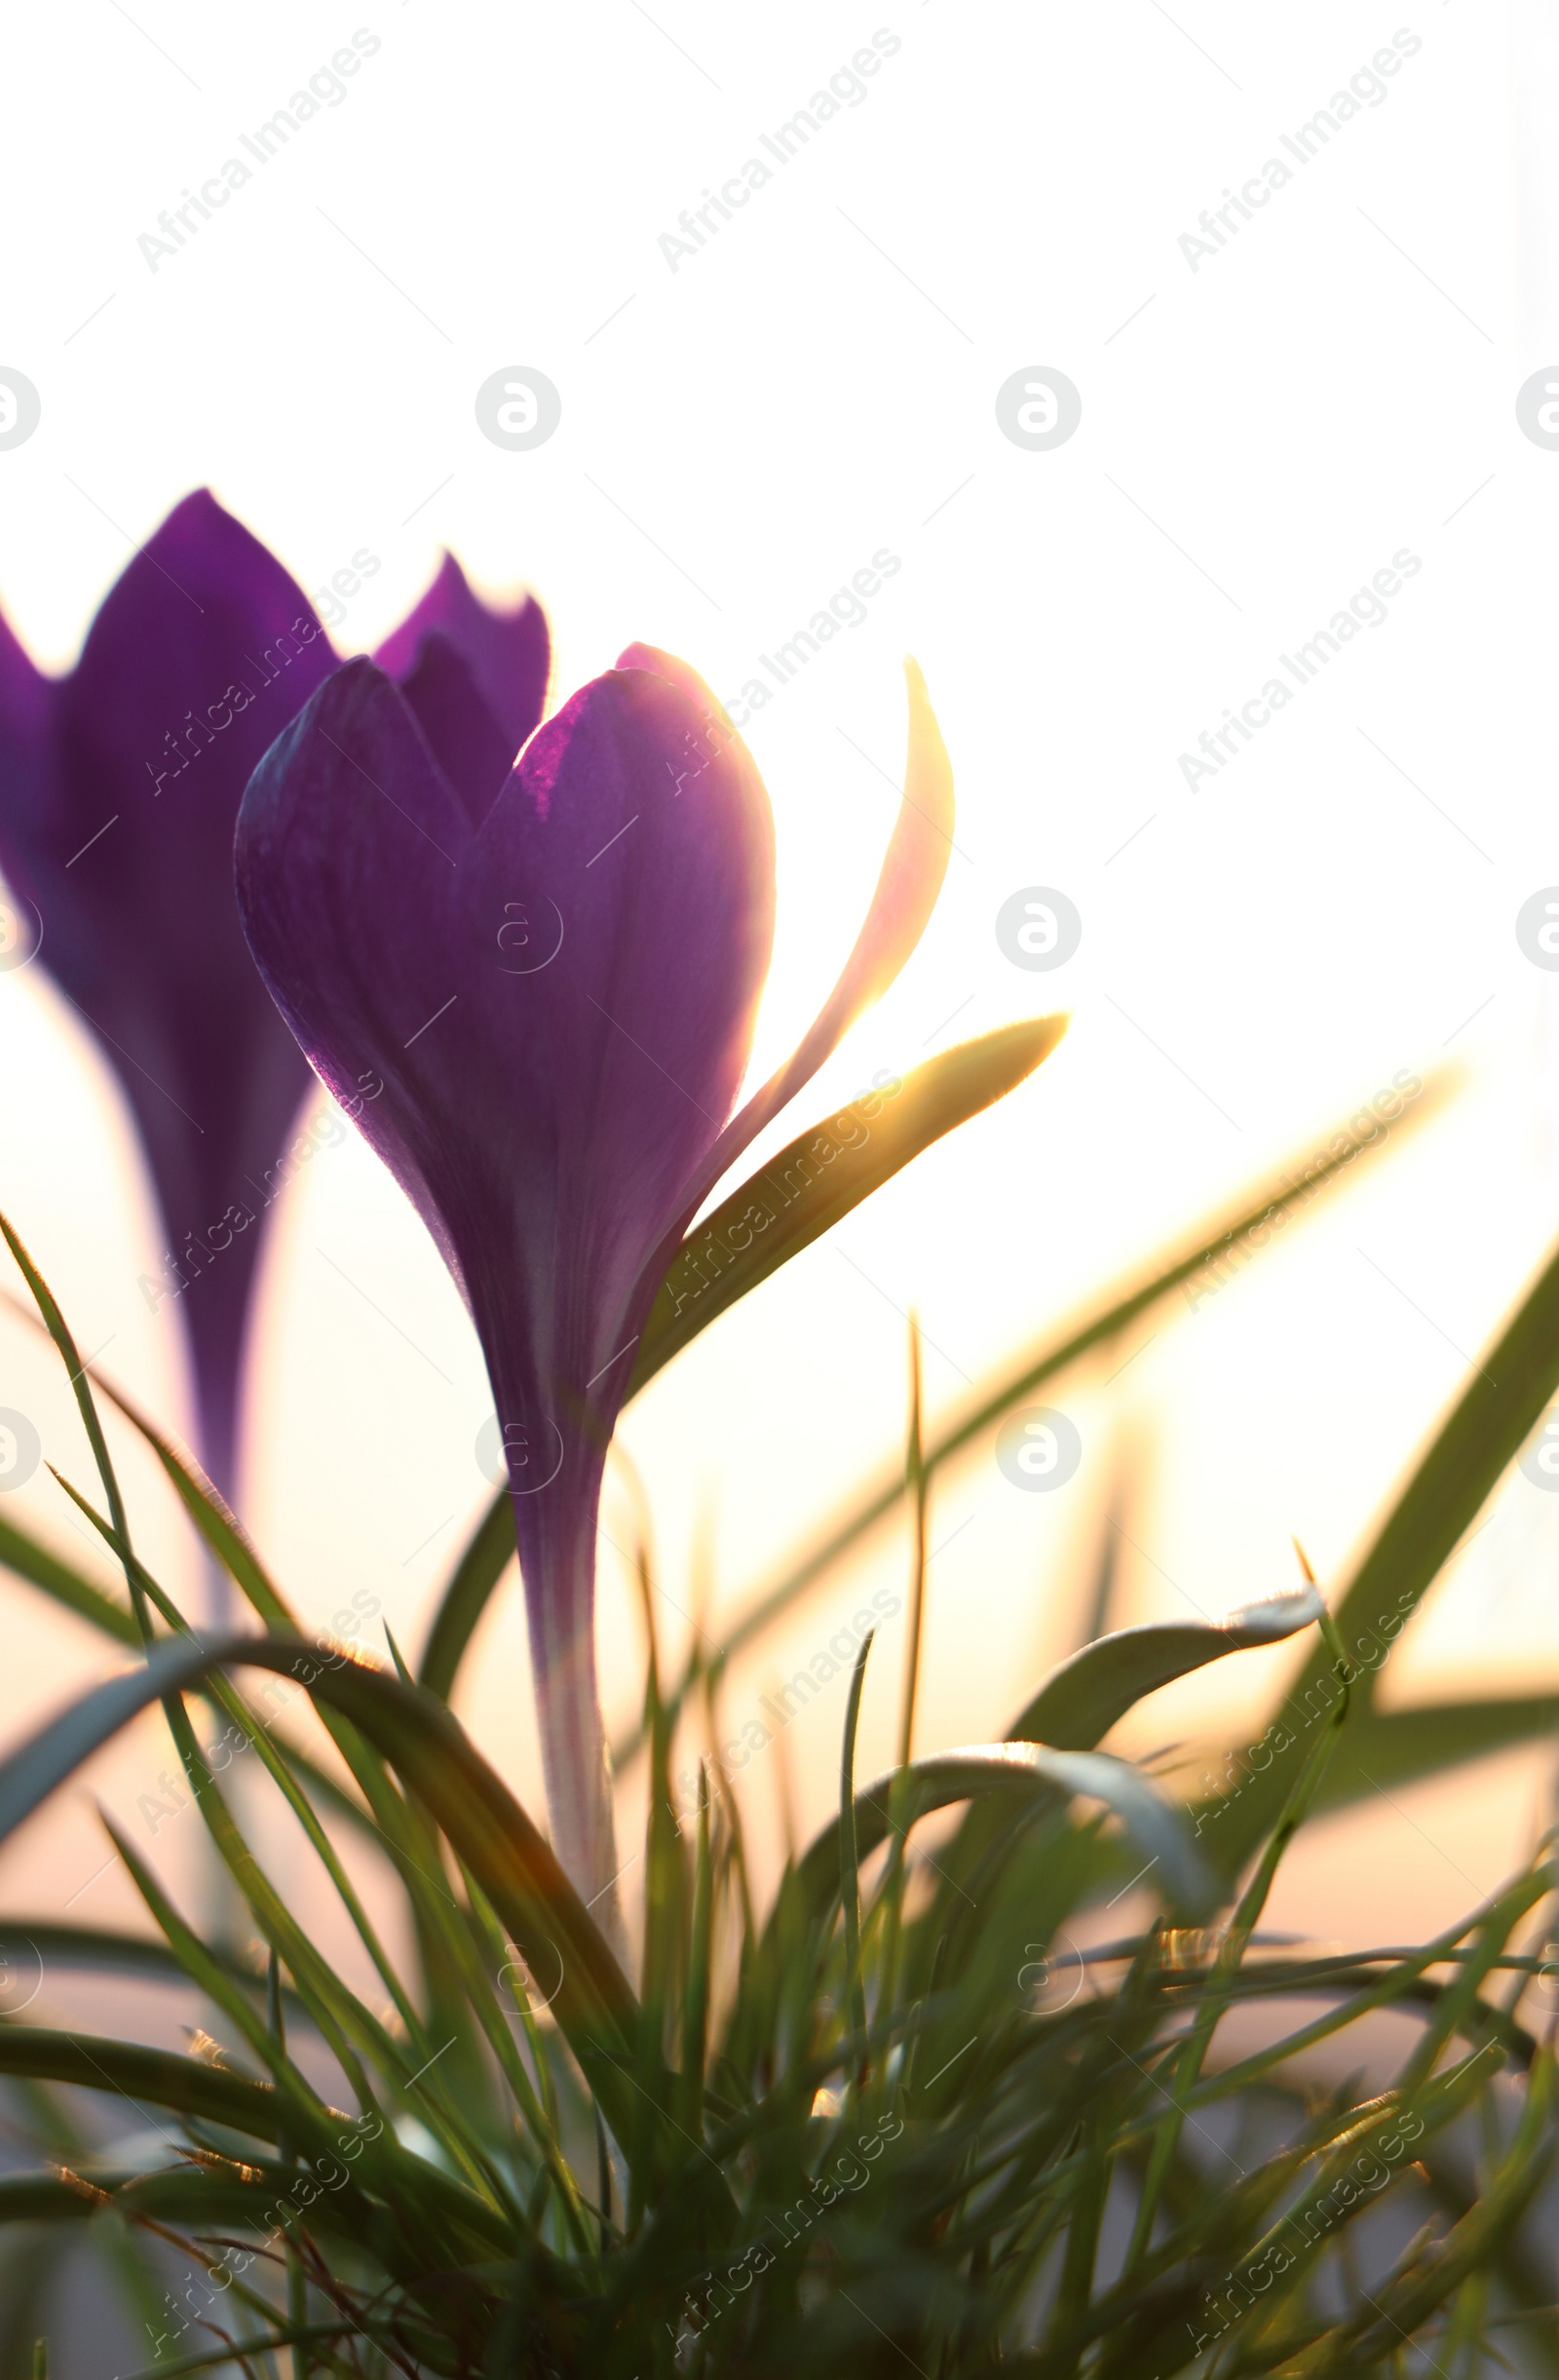 Photo of Fresh purple crocus flowers growing in spring morning